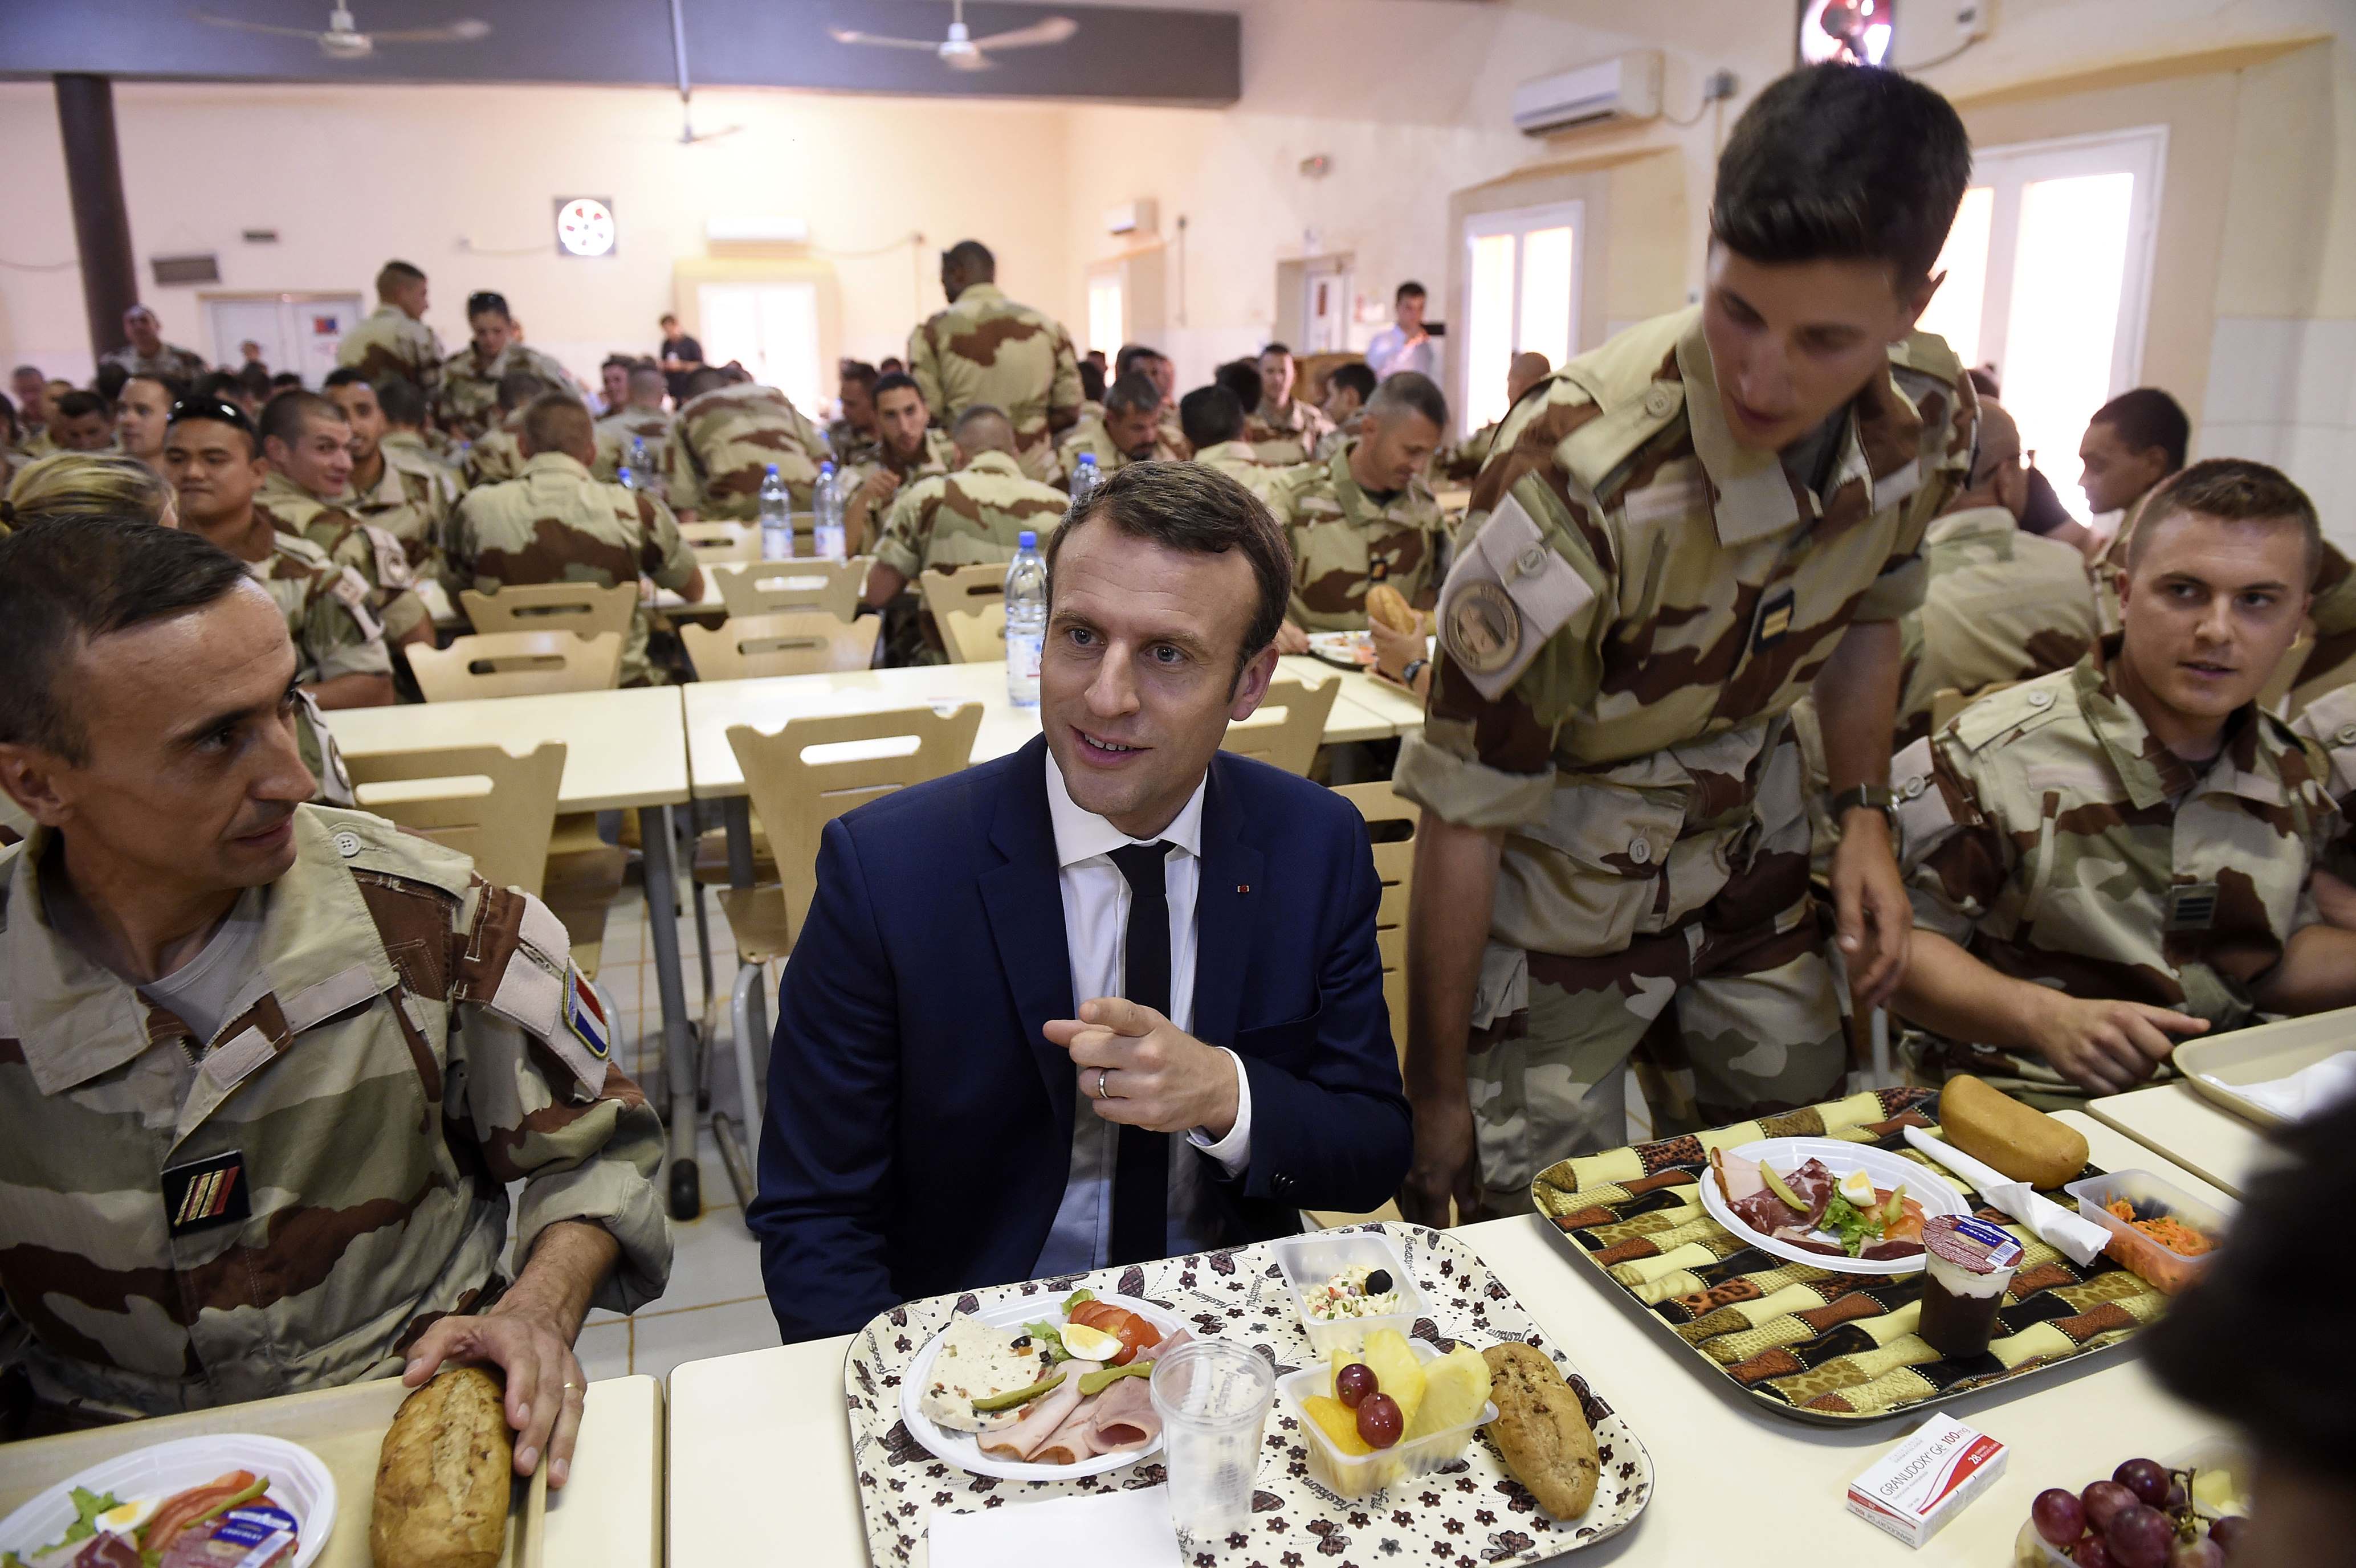 ماكرون يتحدث أثناء  تناول الطعام مع القوات الفرنسية